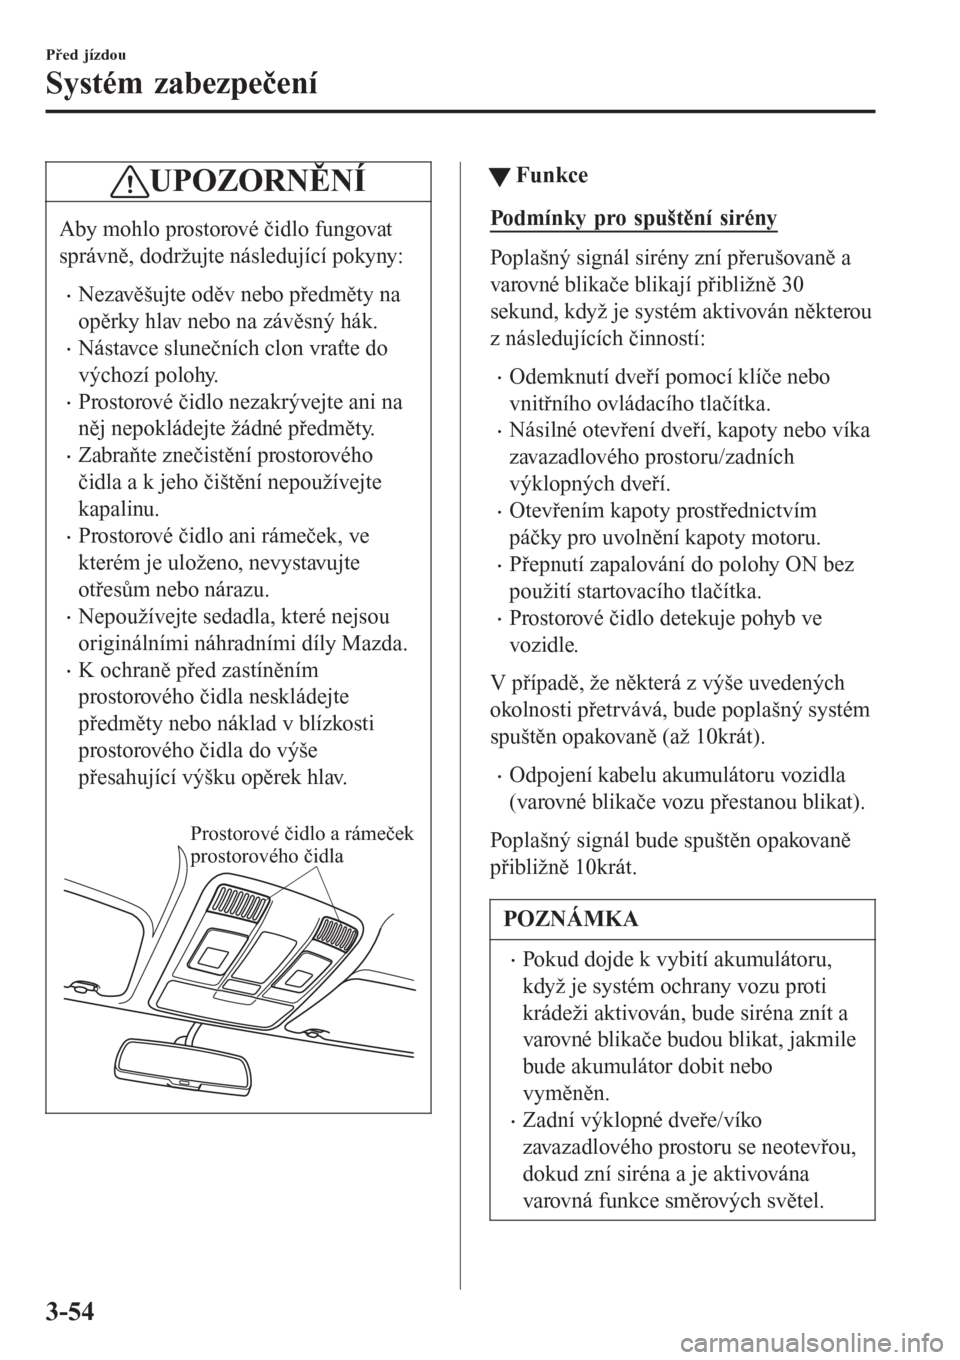 MAZDA MODEL 6 2016  Návod k obsluze (in Czech) UPOZORNĚNÍ
Aby mohlo prostorové čidlo fungovat
správně, dodržujte následující pokyny:
•Nezavěšujte oděv nebo předměty na
opěrky hlav nebo na závěsný hák.
•Nástavce slunečníc